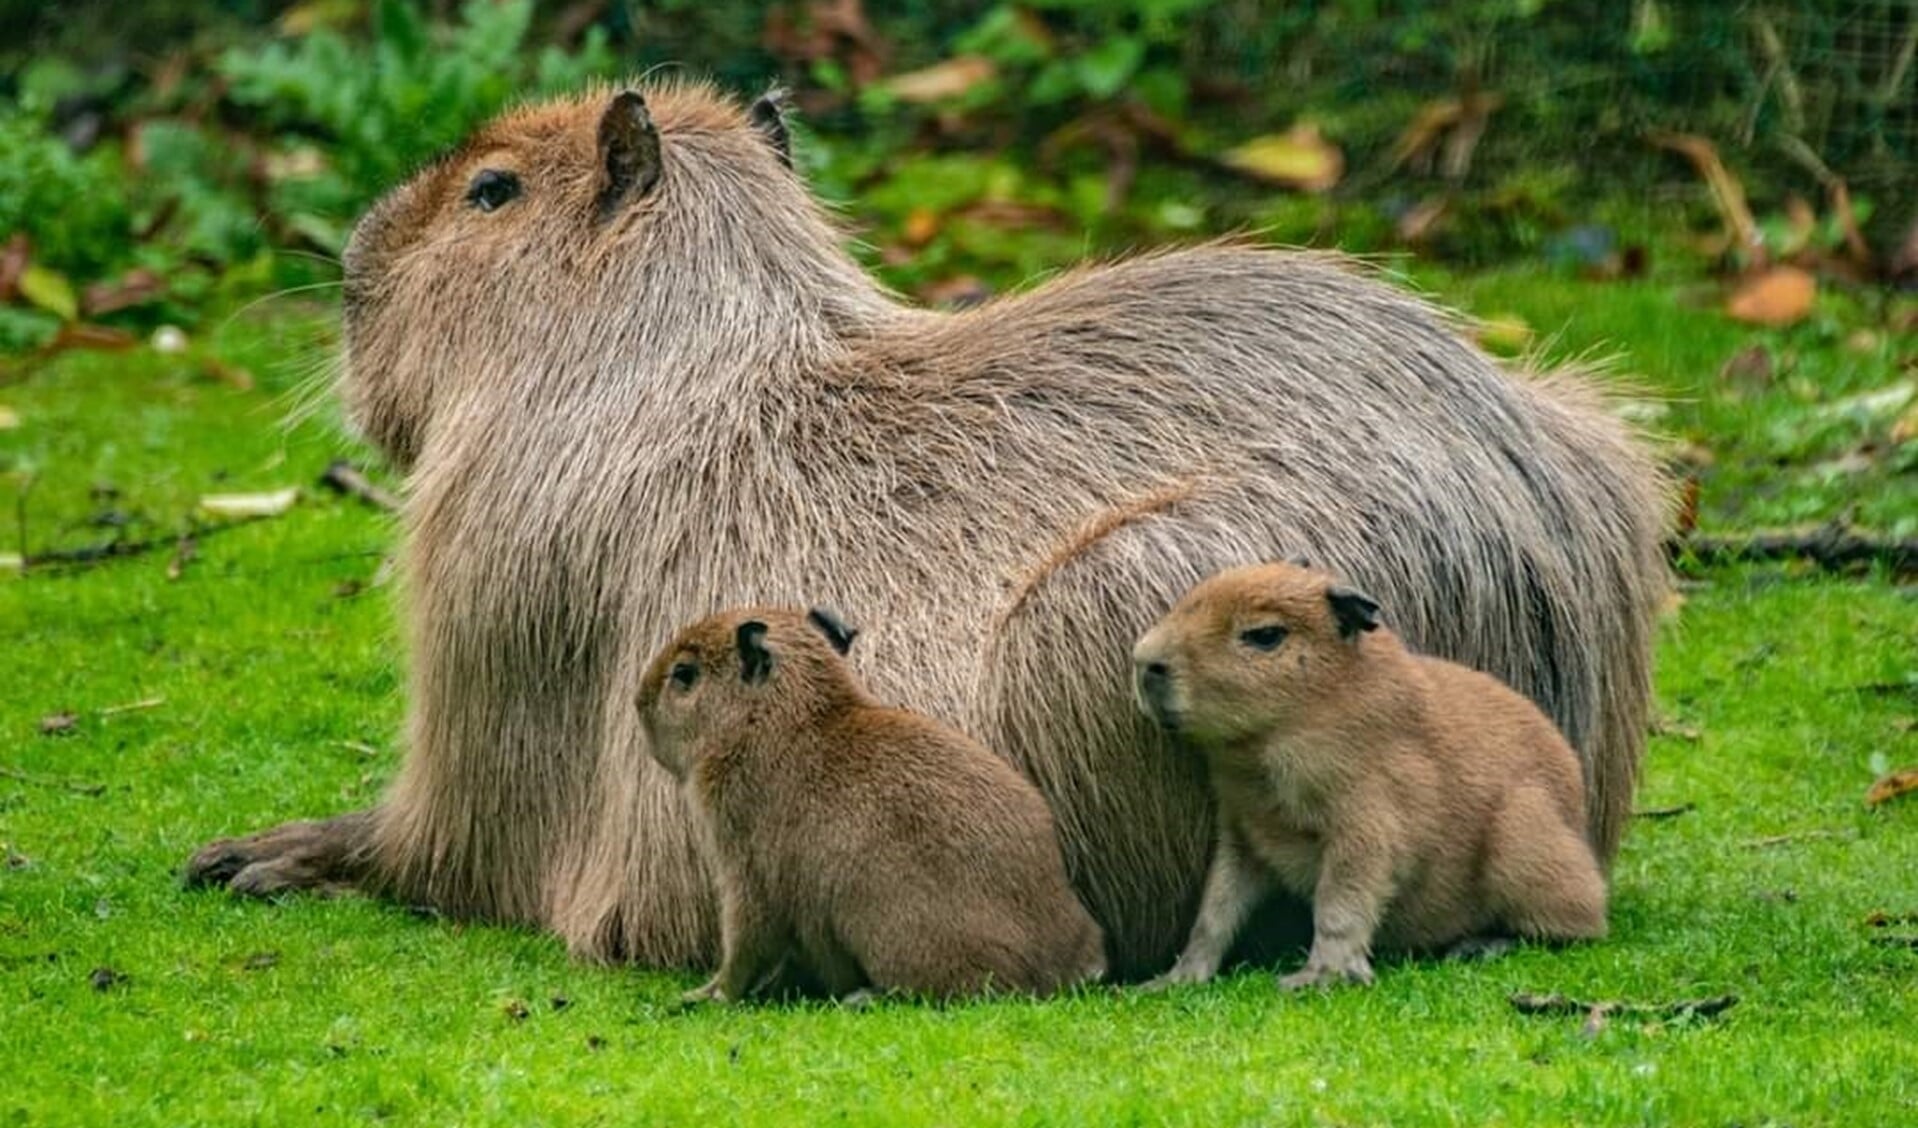 Op het park zijn weer diverse dieren geboren, waaronder drie capybara's, het grootste knaagdier ter wereld. (Foto: Jeroen de Bruijn)